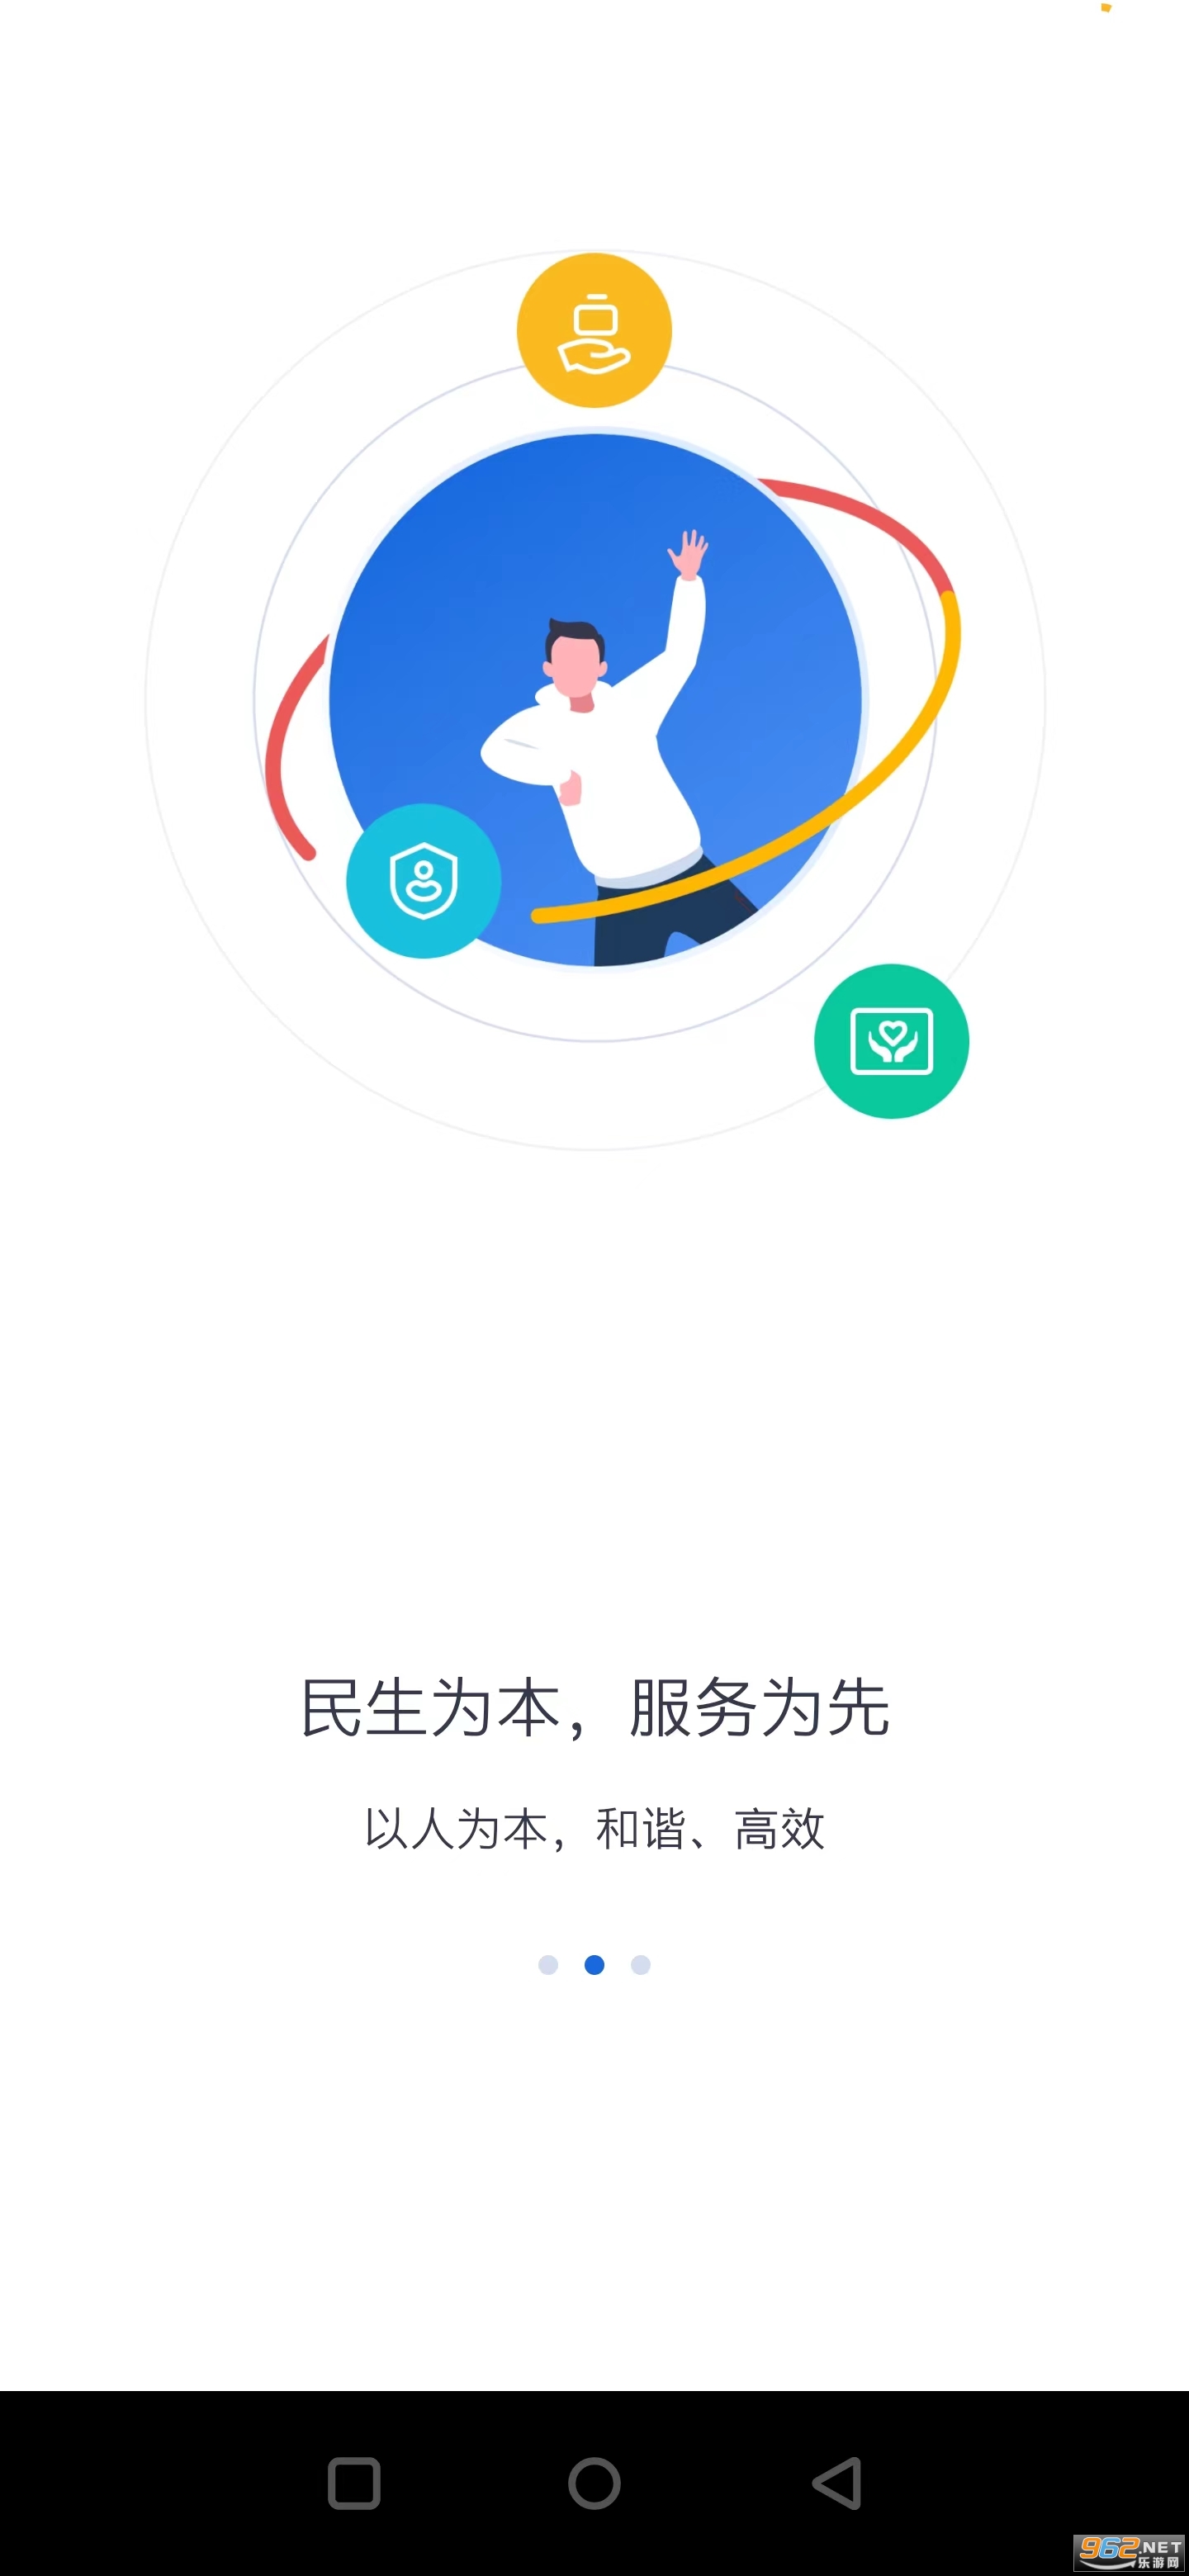 河北人社一体化公共服务平台v9.2.30 官方版截图0